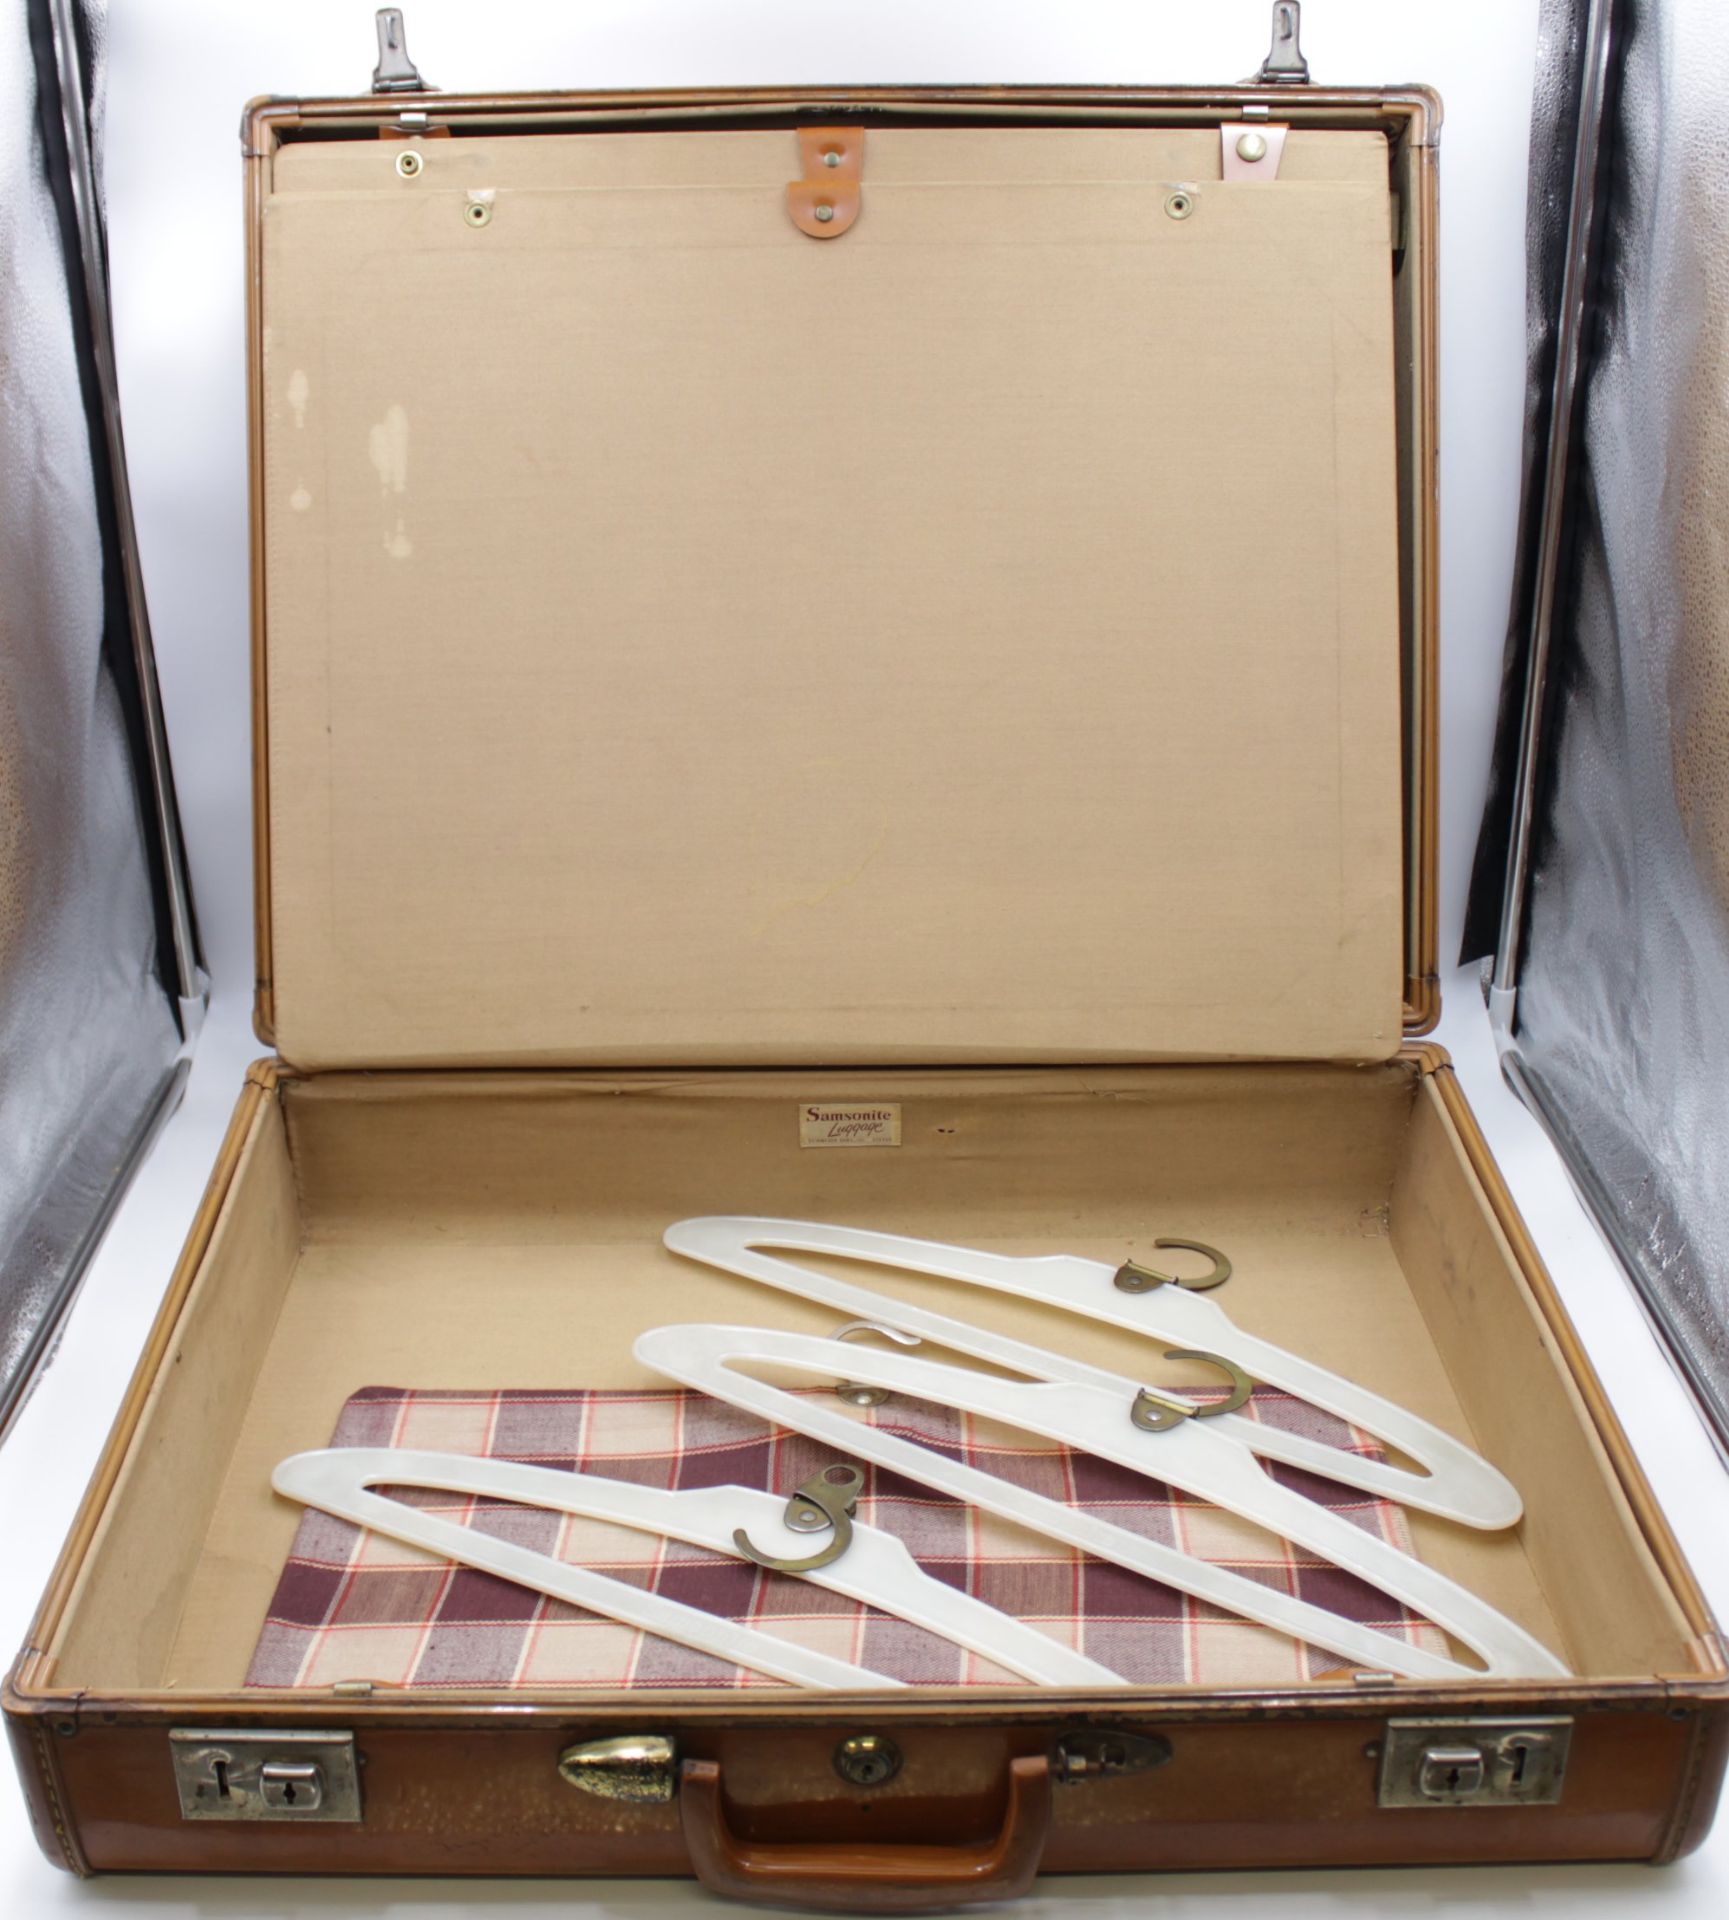 Koffer, Samsonite Luggage, Leder, wohl 40/50er Jahre, Gebrauchsspuren, ca. 49 x 62cm. - Bild 6 aus 8